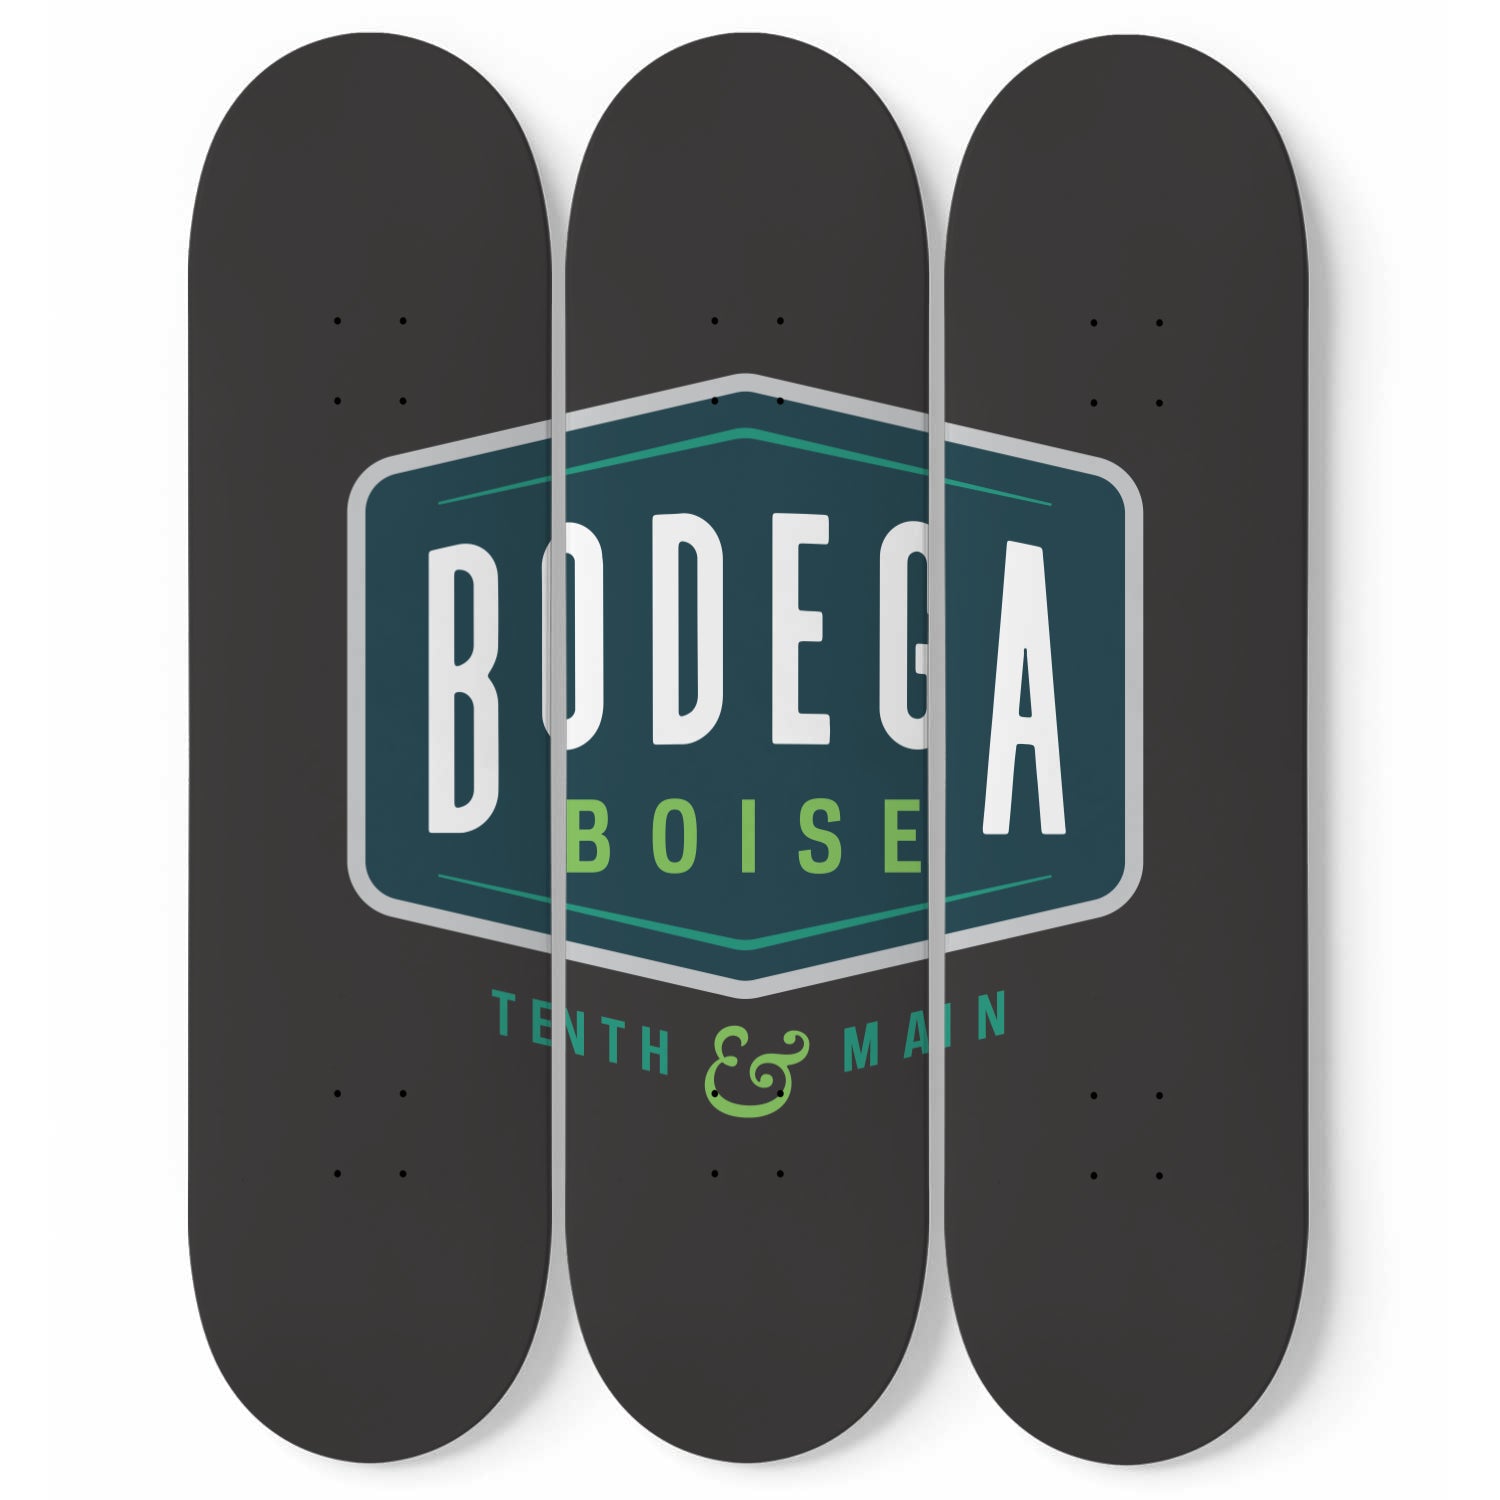 Custom Print - Bodega Boise V2 - Skater Wall